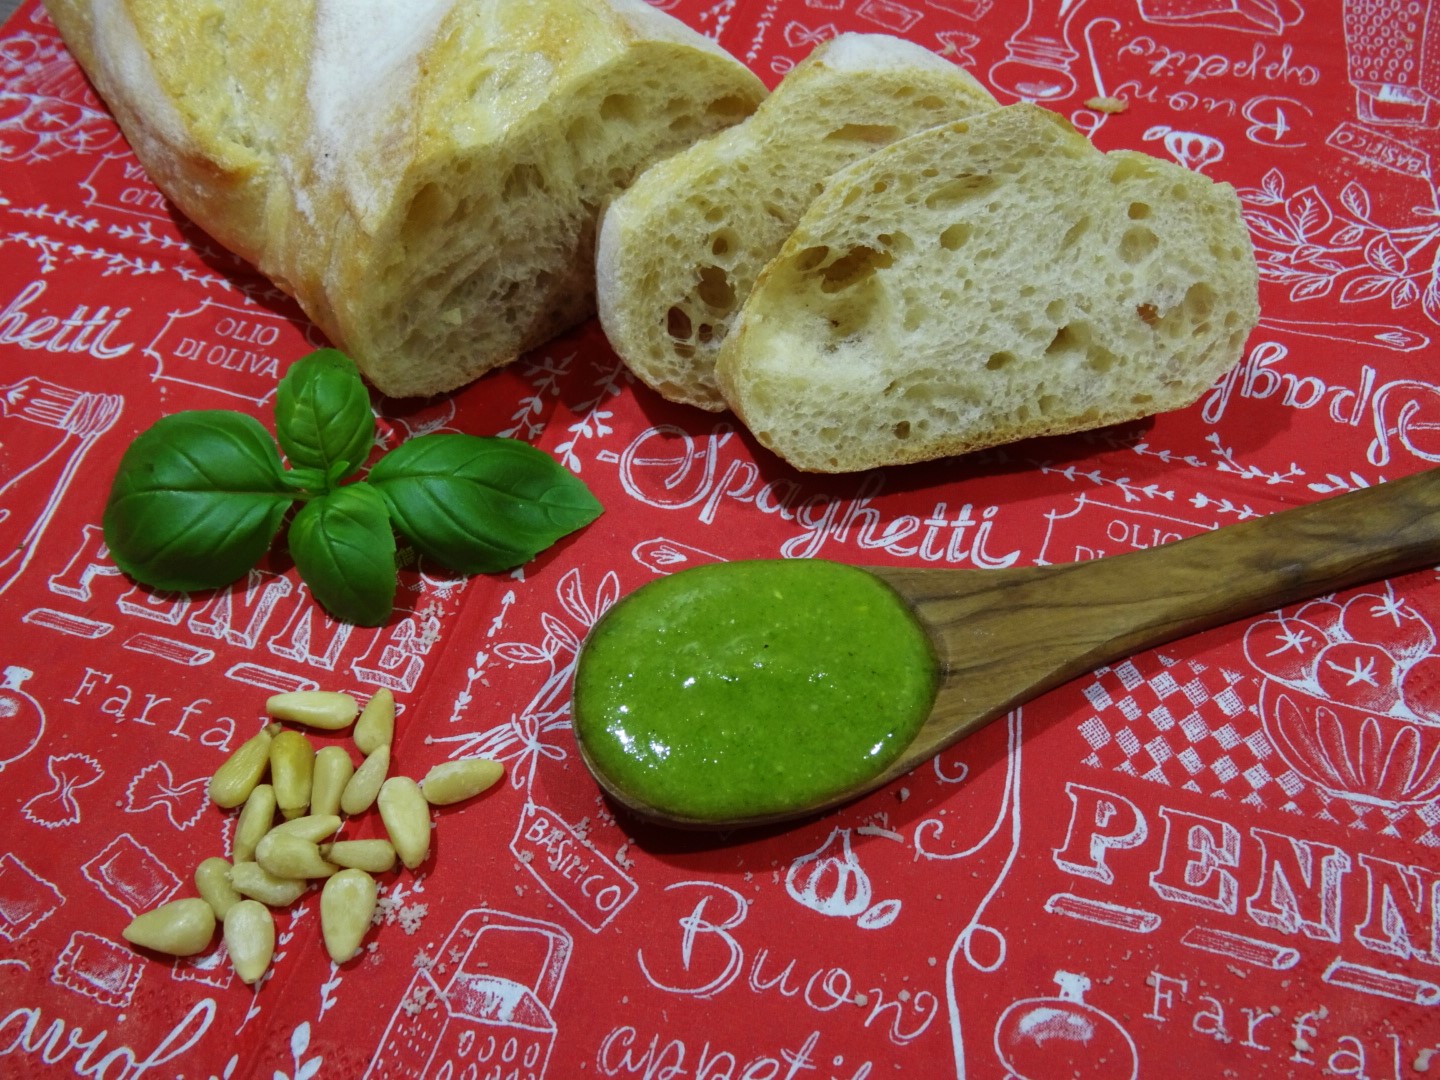 Italien - Ganz persönlich, für dich!: Grün, grüner, Pesto alla Genovese!